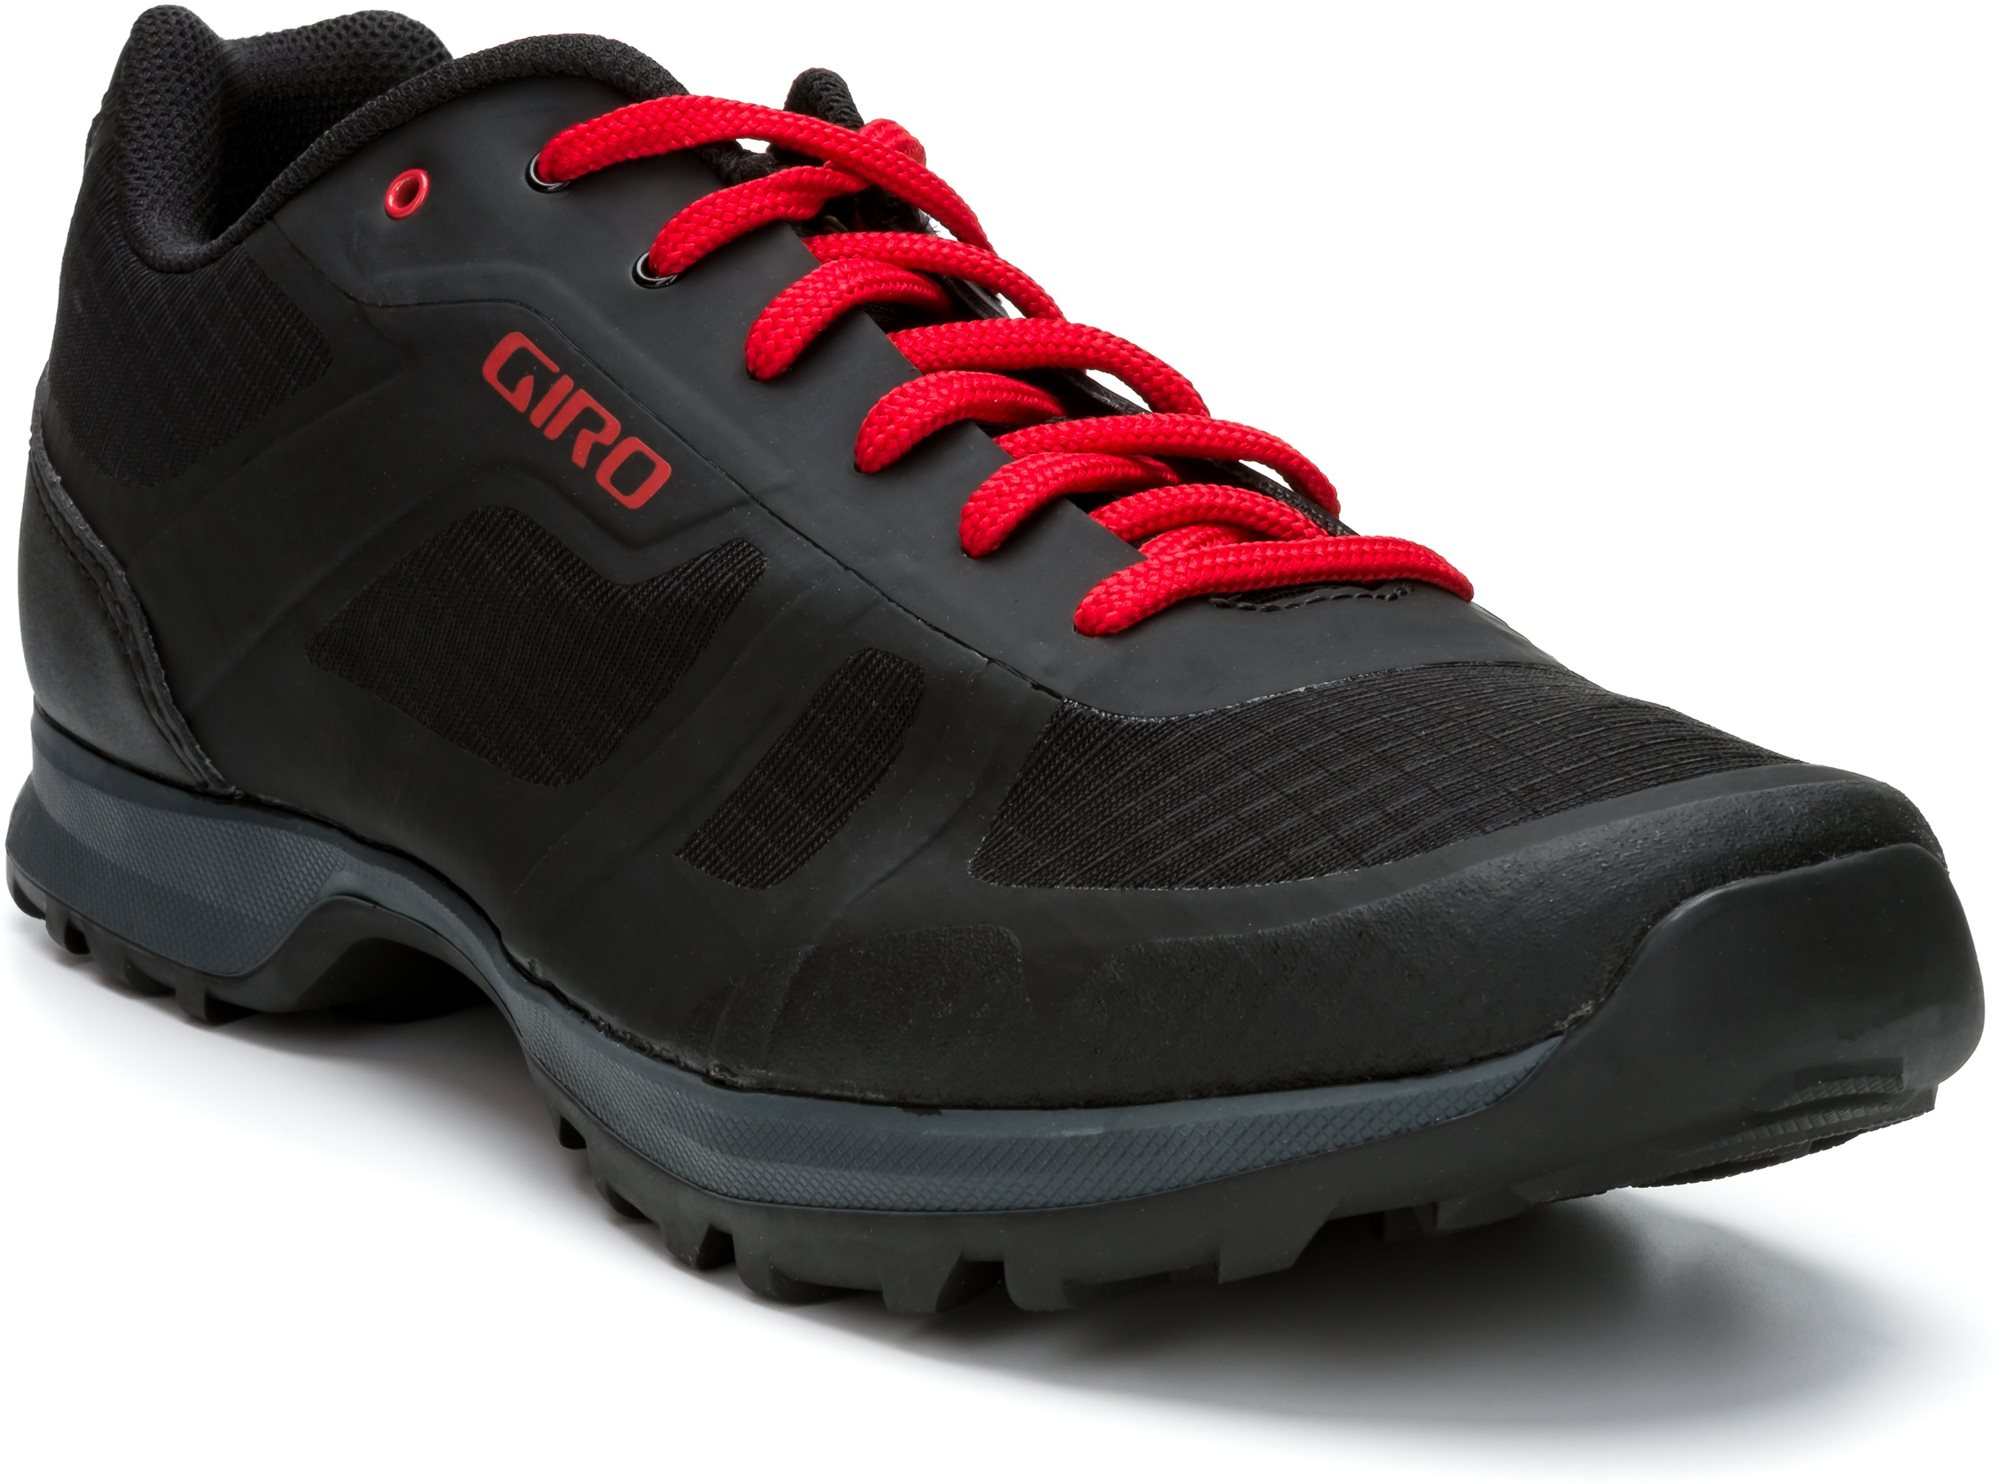 Kerékpáros cipő GIRO Gauge kerékpáros cipő, fekete/világos piros, 46-os